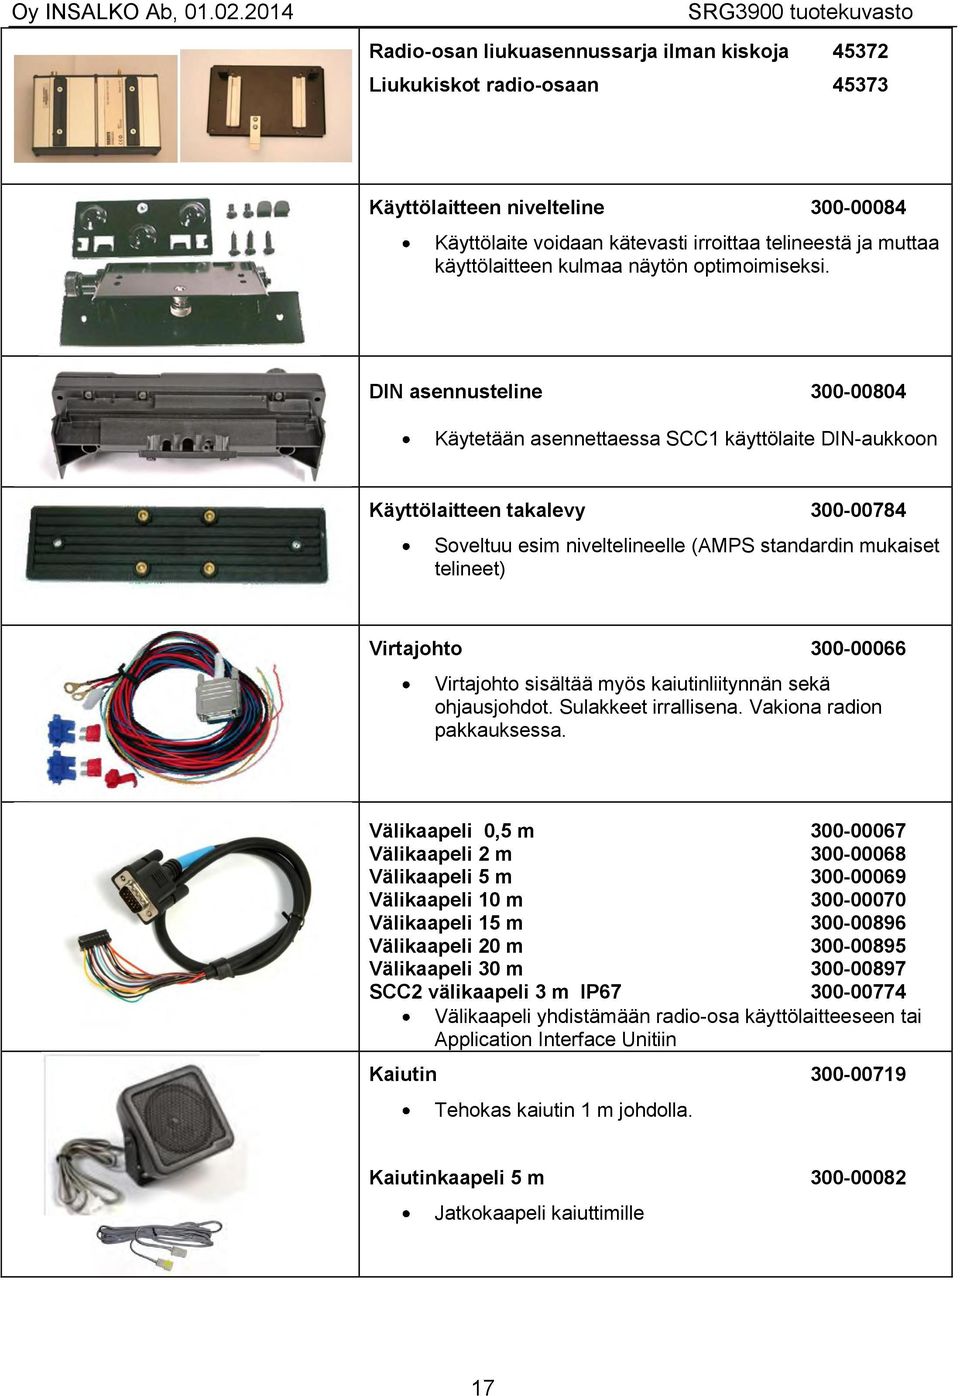 DIN asennusteline 300-00804 Käytetään asennettaessa SCC1 käyttölaite DIN-aukkoon Käyttölaitteen takalevy 300-00784 Soveltuu esim niveltelineelle (AMPS standardin mukaiset telineet) Virtajohto